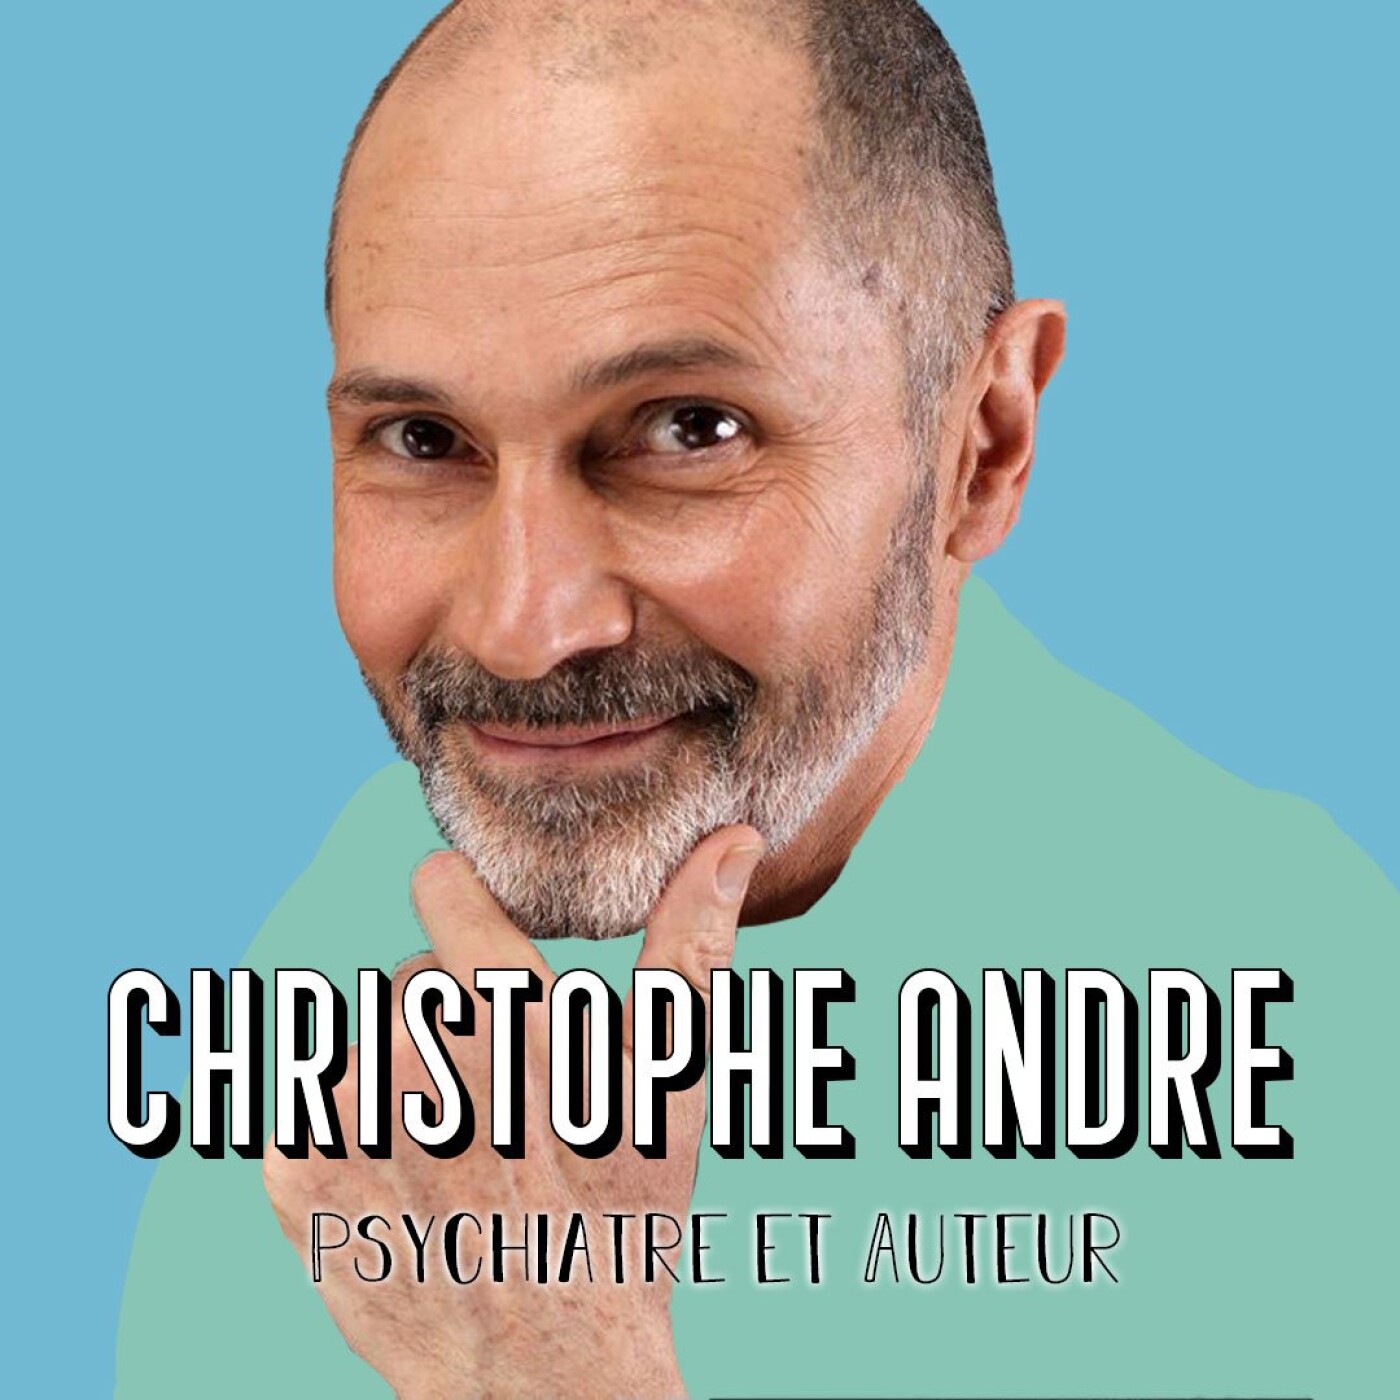 Christophe André, Psychiatre et Auteur - "Devenir chasseur de bonheur"